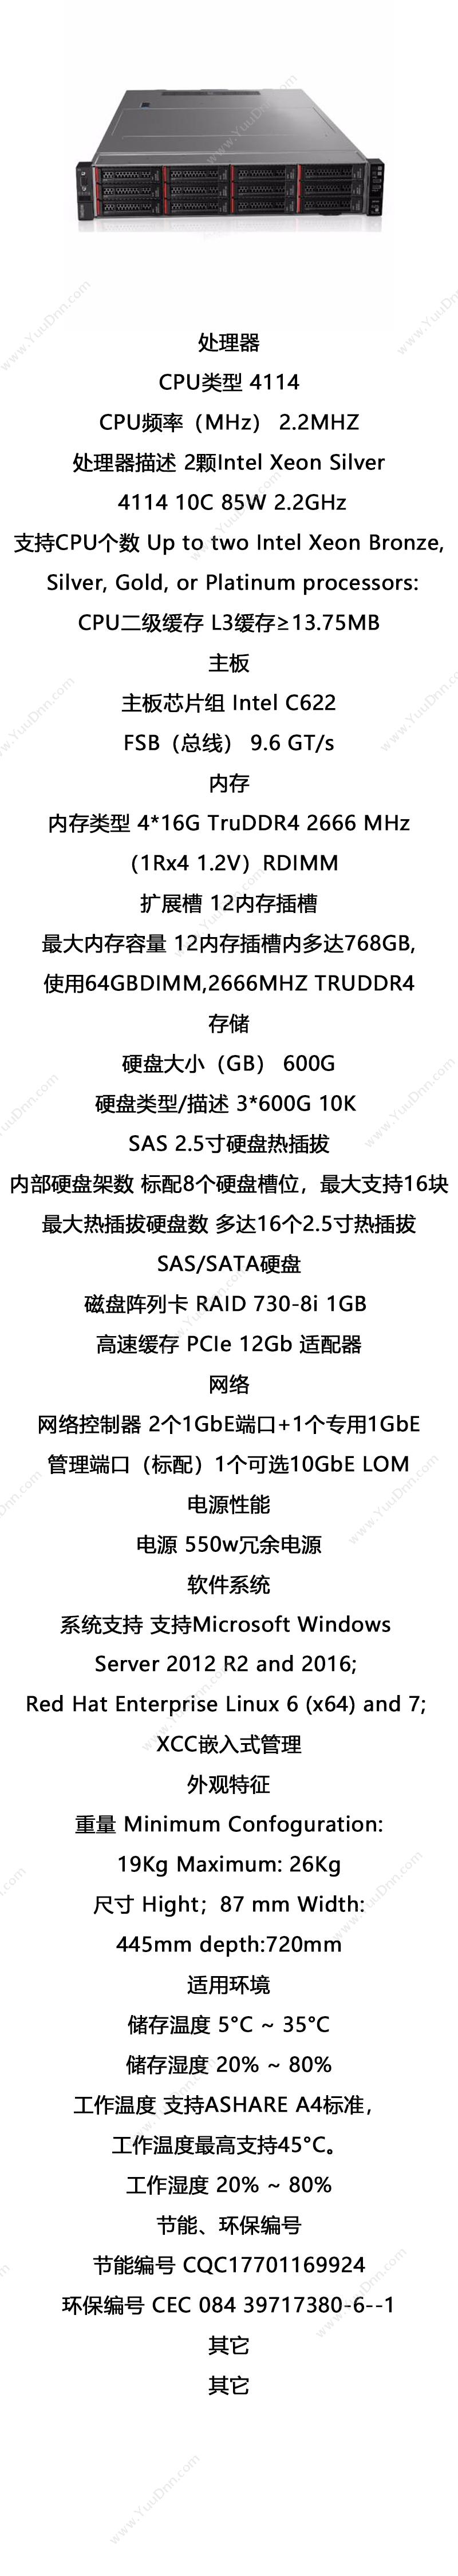 联想 Lenovo ThinkSystem SR550（4114*2，4*16g，3*600G，730-raid5 ） 服务器 87 mm*445mm*720mm 塔式服务器